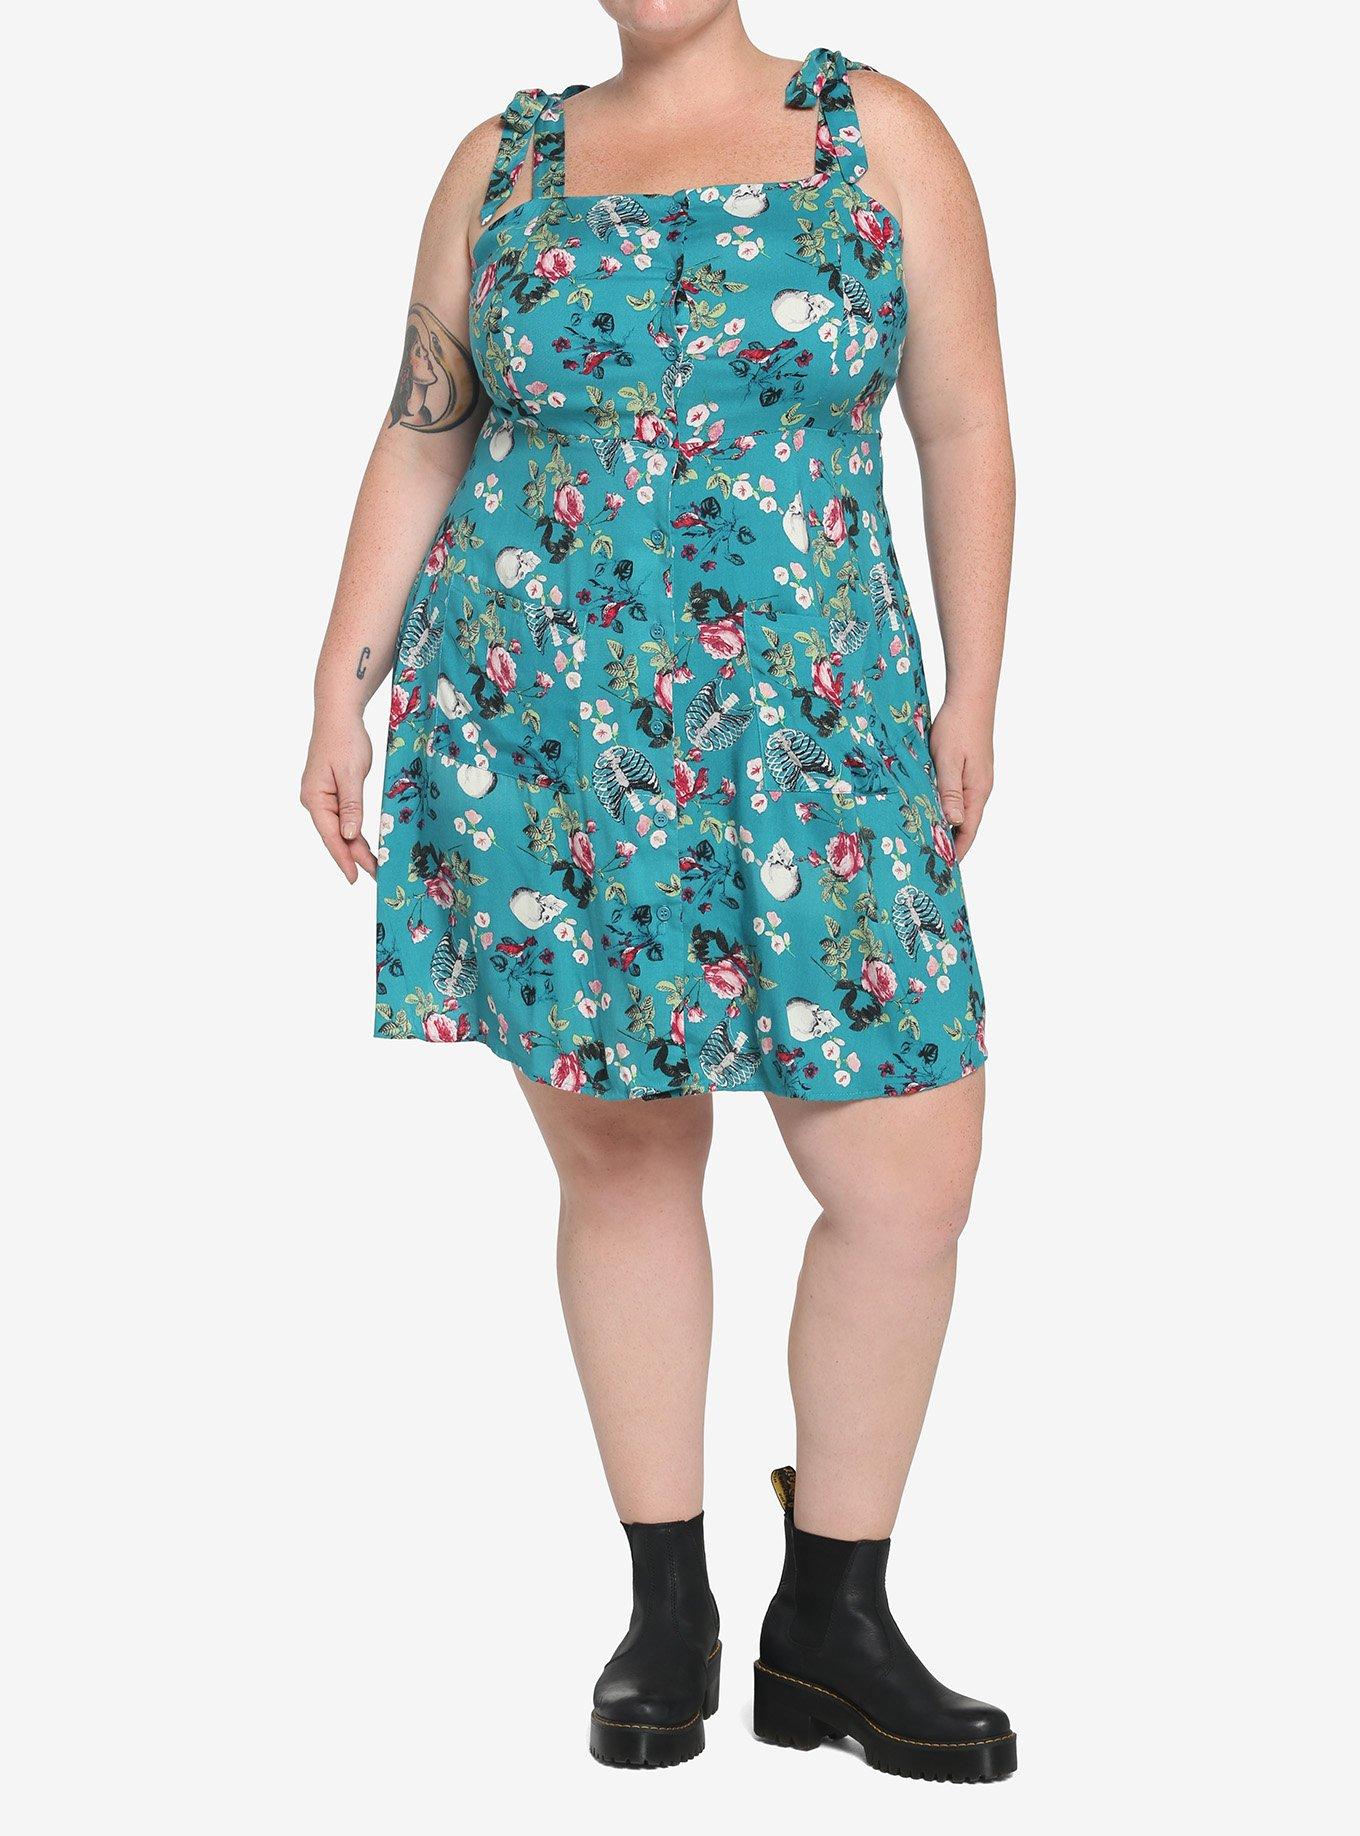 Teal Skeleton Floral Dress Plus Size, TEAL, alternate